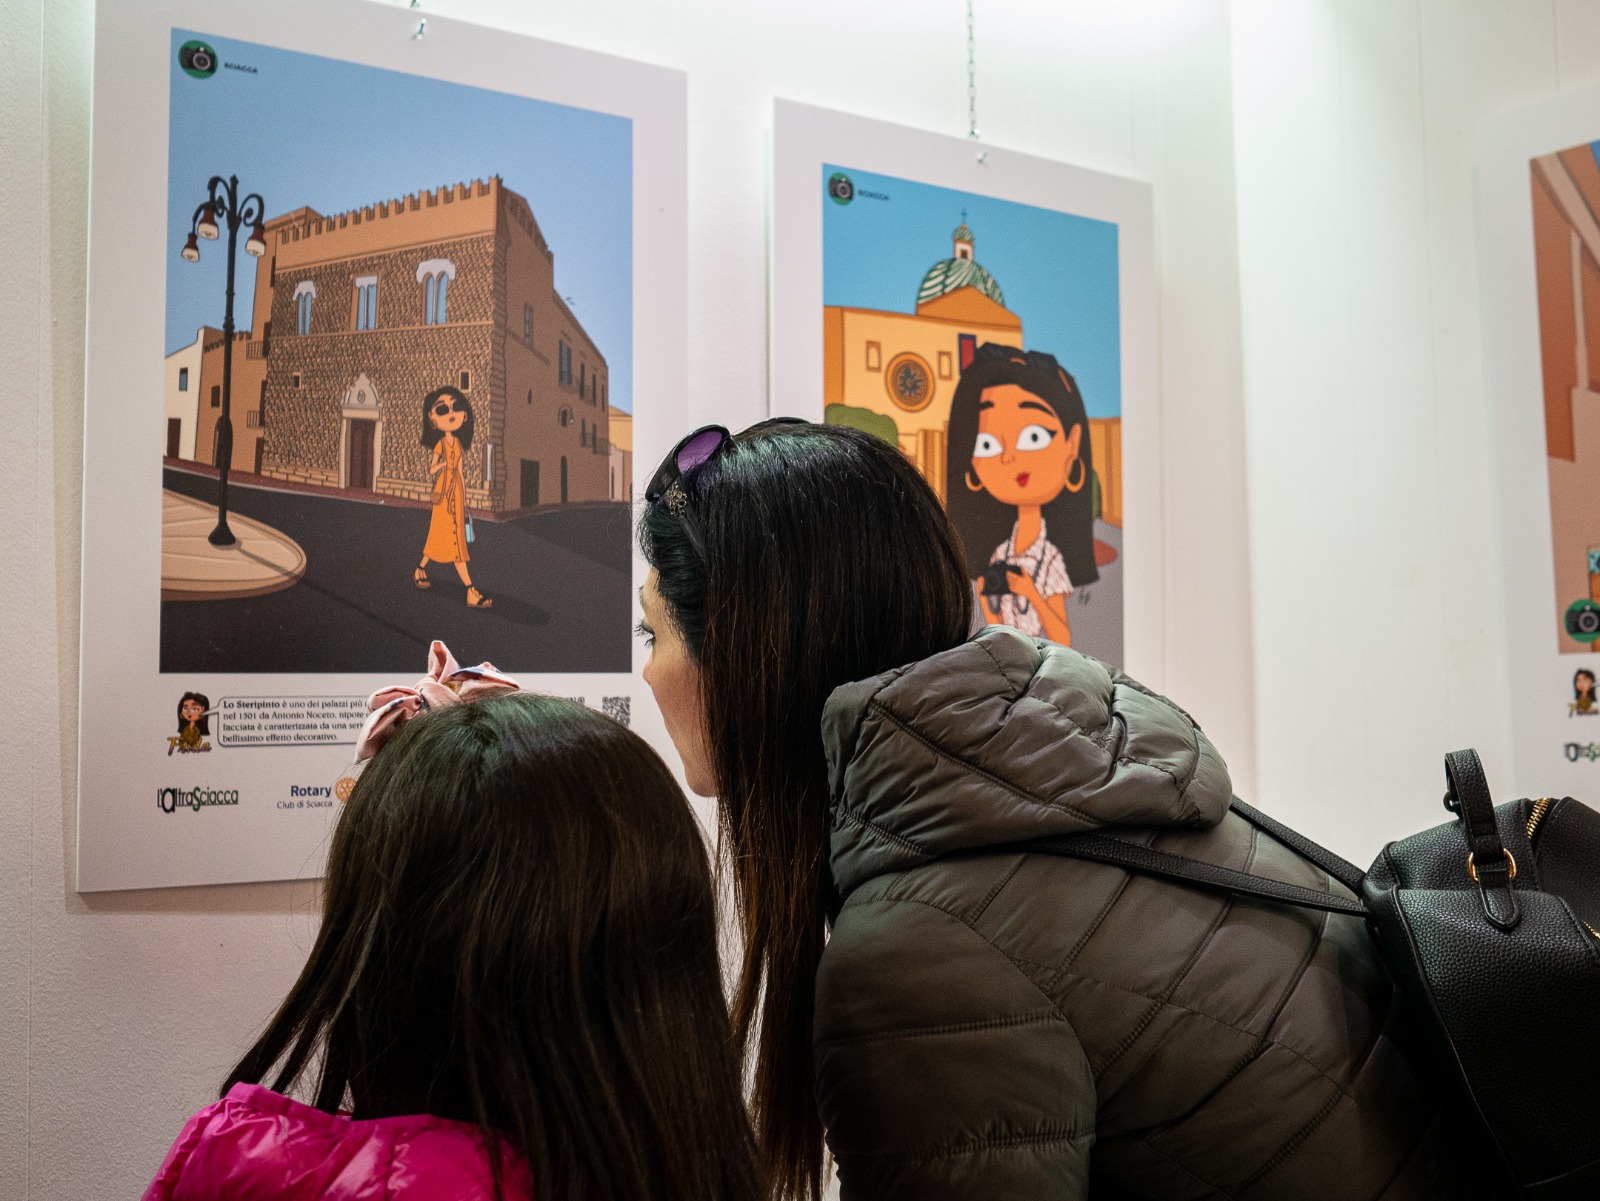 La mostra “Sciacca vista da Frida” prosegue fino al 25 Aprile